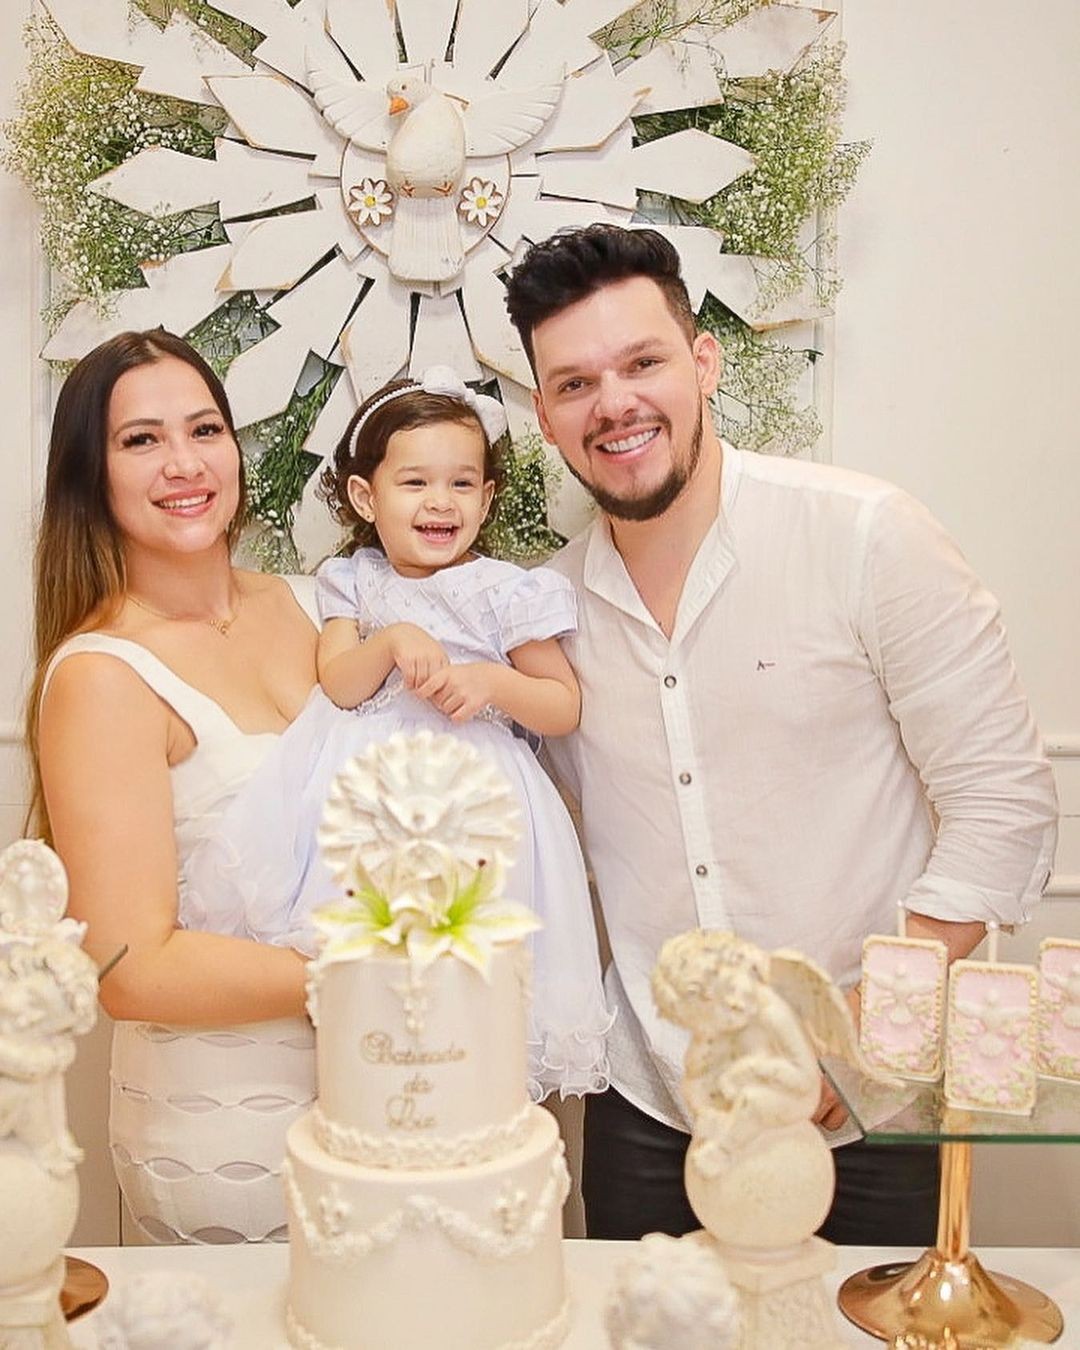 O cantor Thiago Costa é pai de uma menina, Liz, fruto do casamento com Idiane Caldas (Foto: @carolmarquesfotografia / Reprodução Instagram)